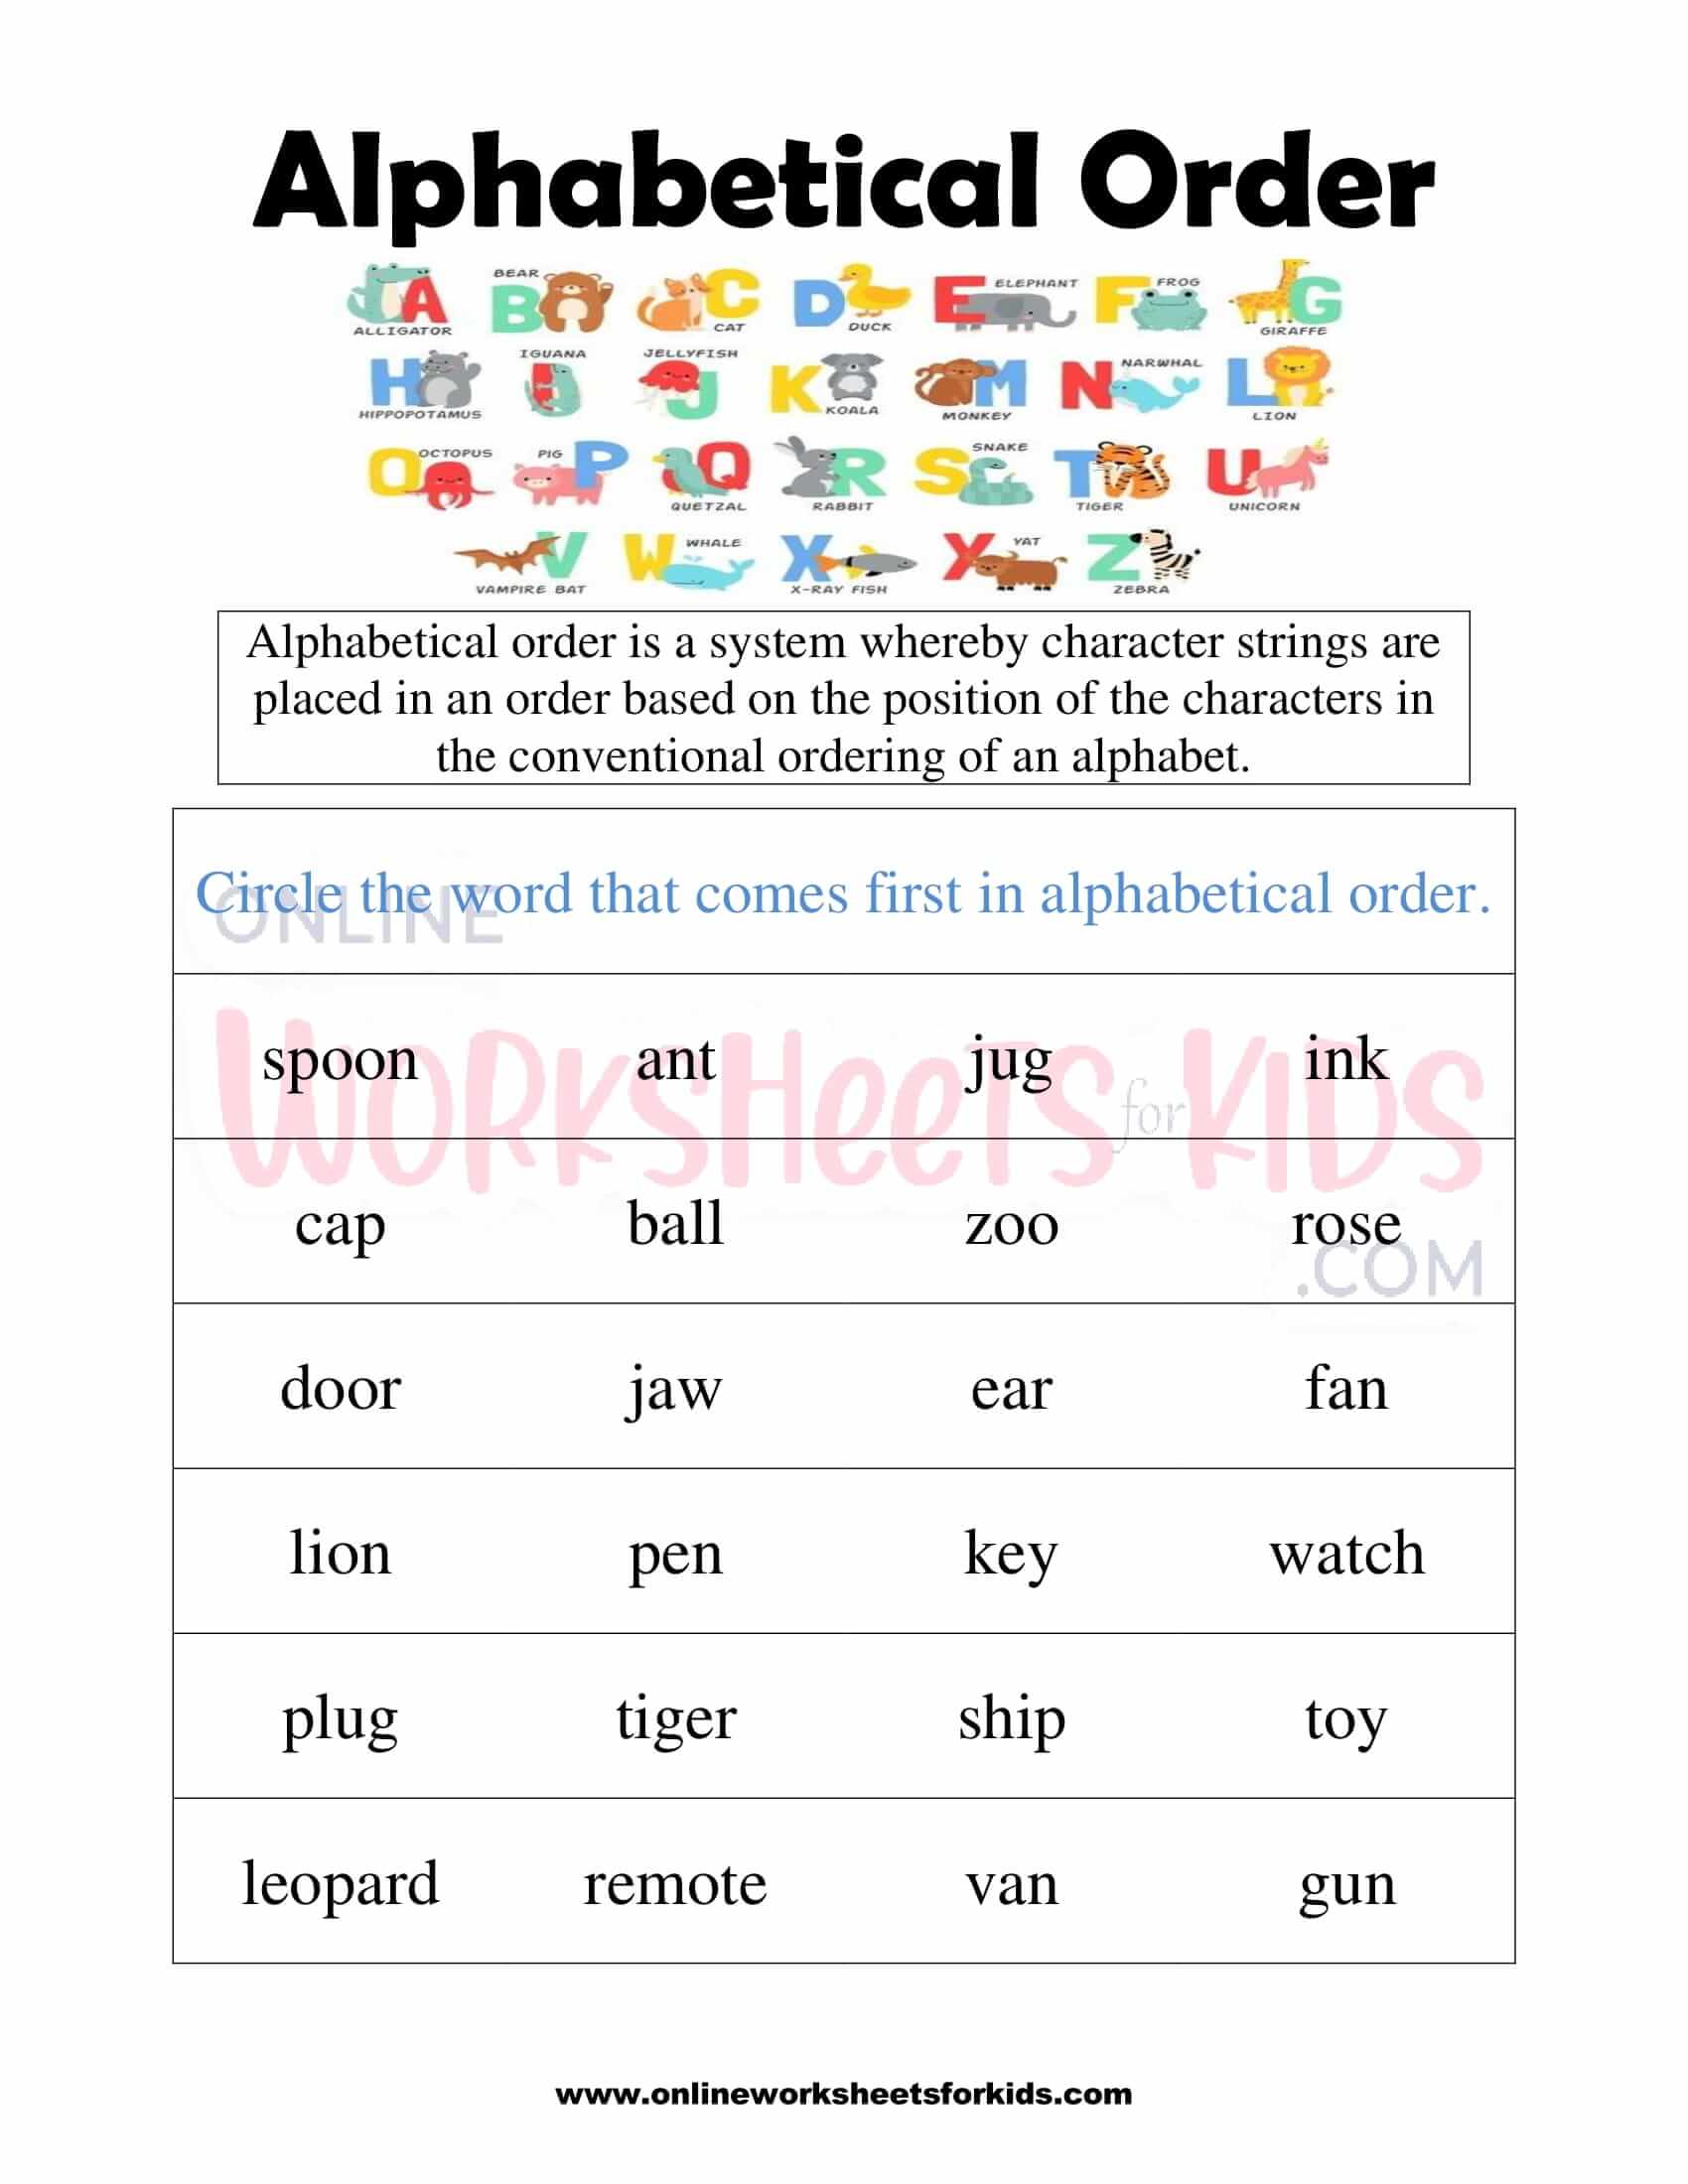 alphabetical-order-worksheets-k5-learning-alphabetical-order-worksheet-for-grade-1